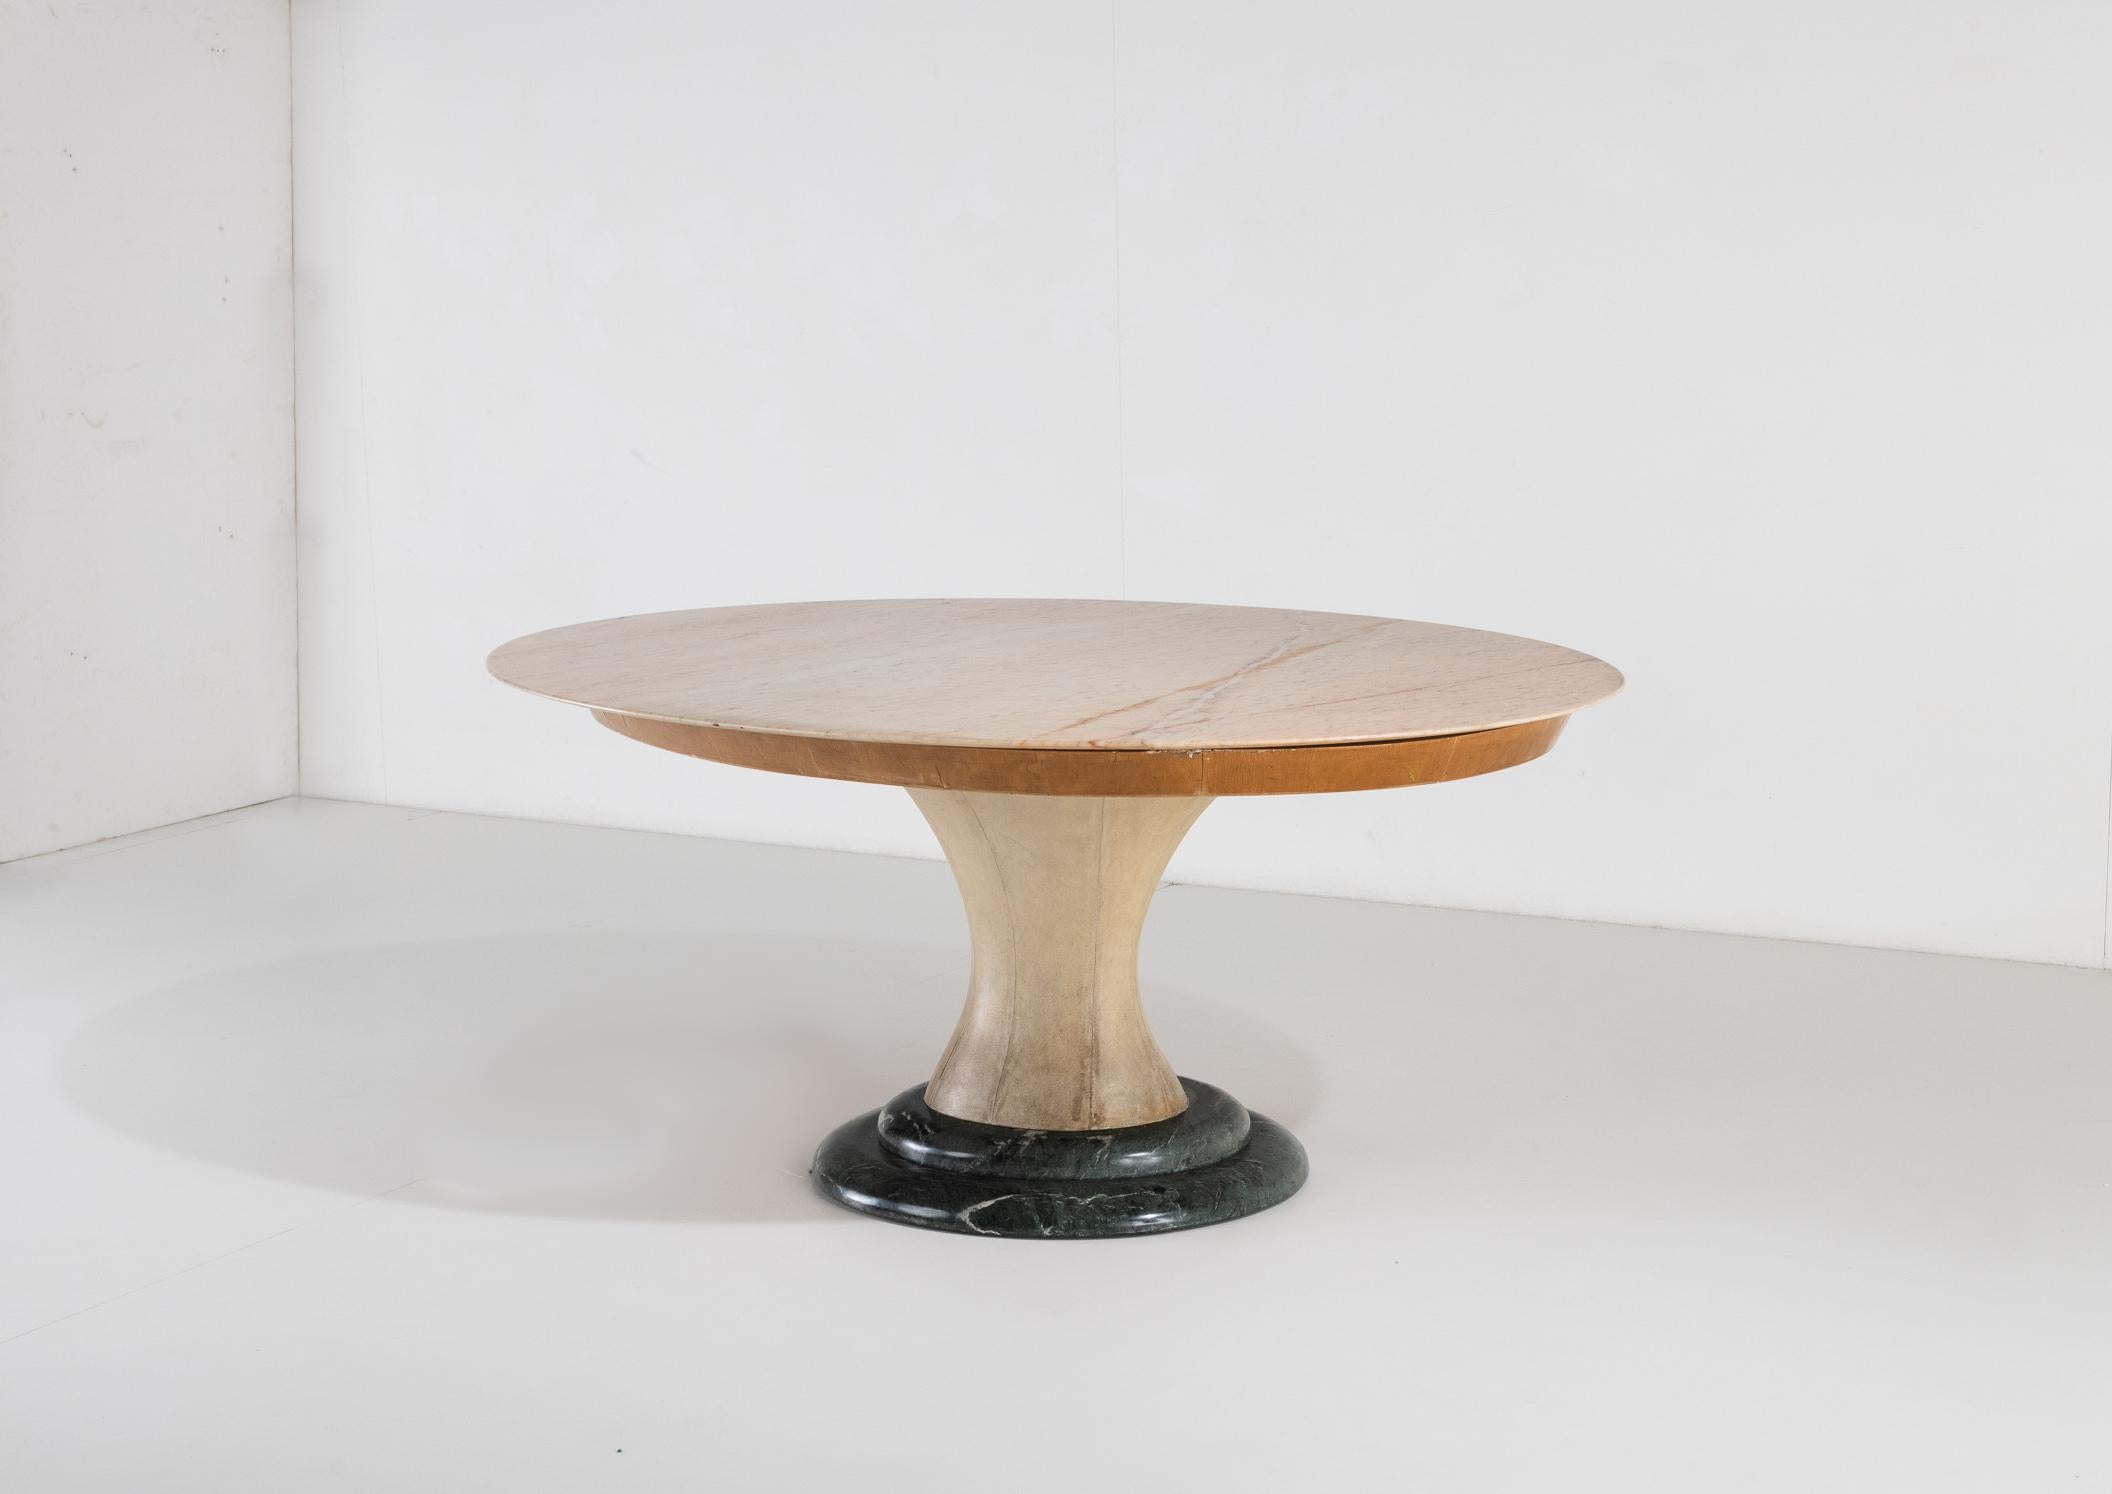 Ein Tisch mit weichen und eleganten Linien, mit einem massiven, mit grünem Marmor verankerten Sockel und einem sanduhrförmigen Holzkorpus mit originalen Pergamentbezügen. Das Gestell trägt eine Platte aus dickem Holz, die ihrerseits einen herrlichen